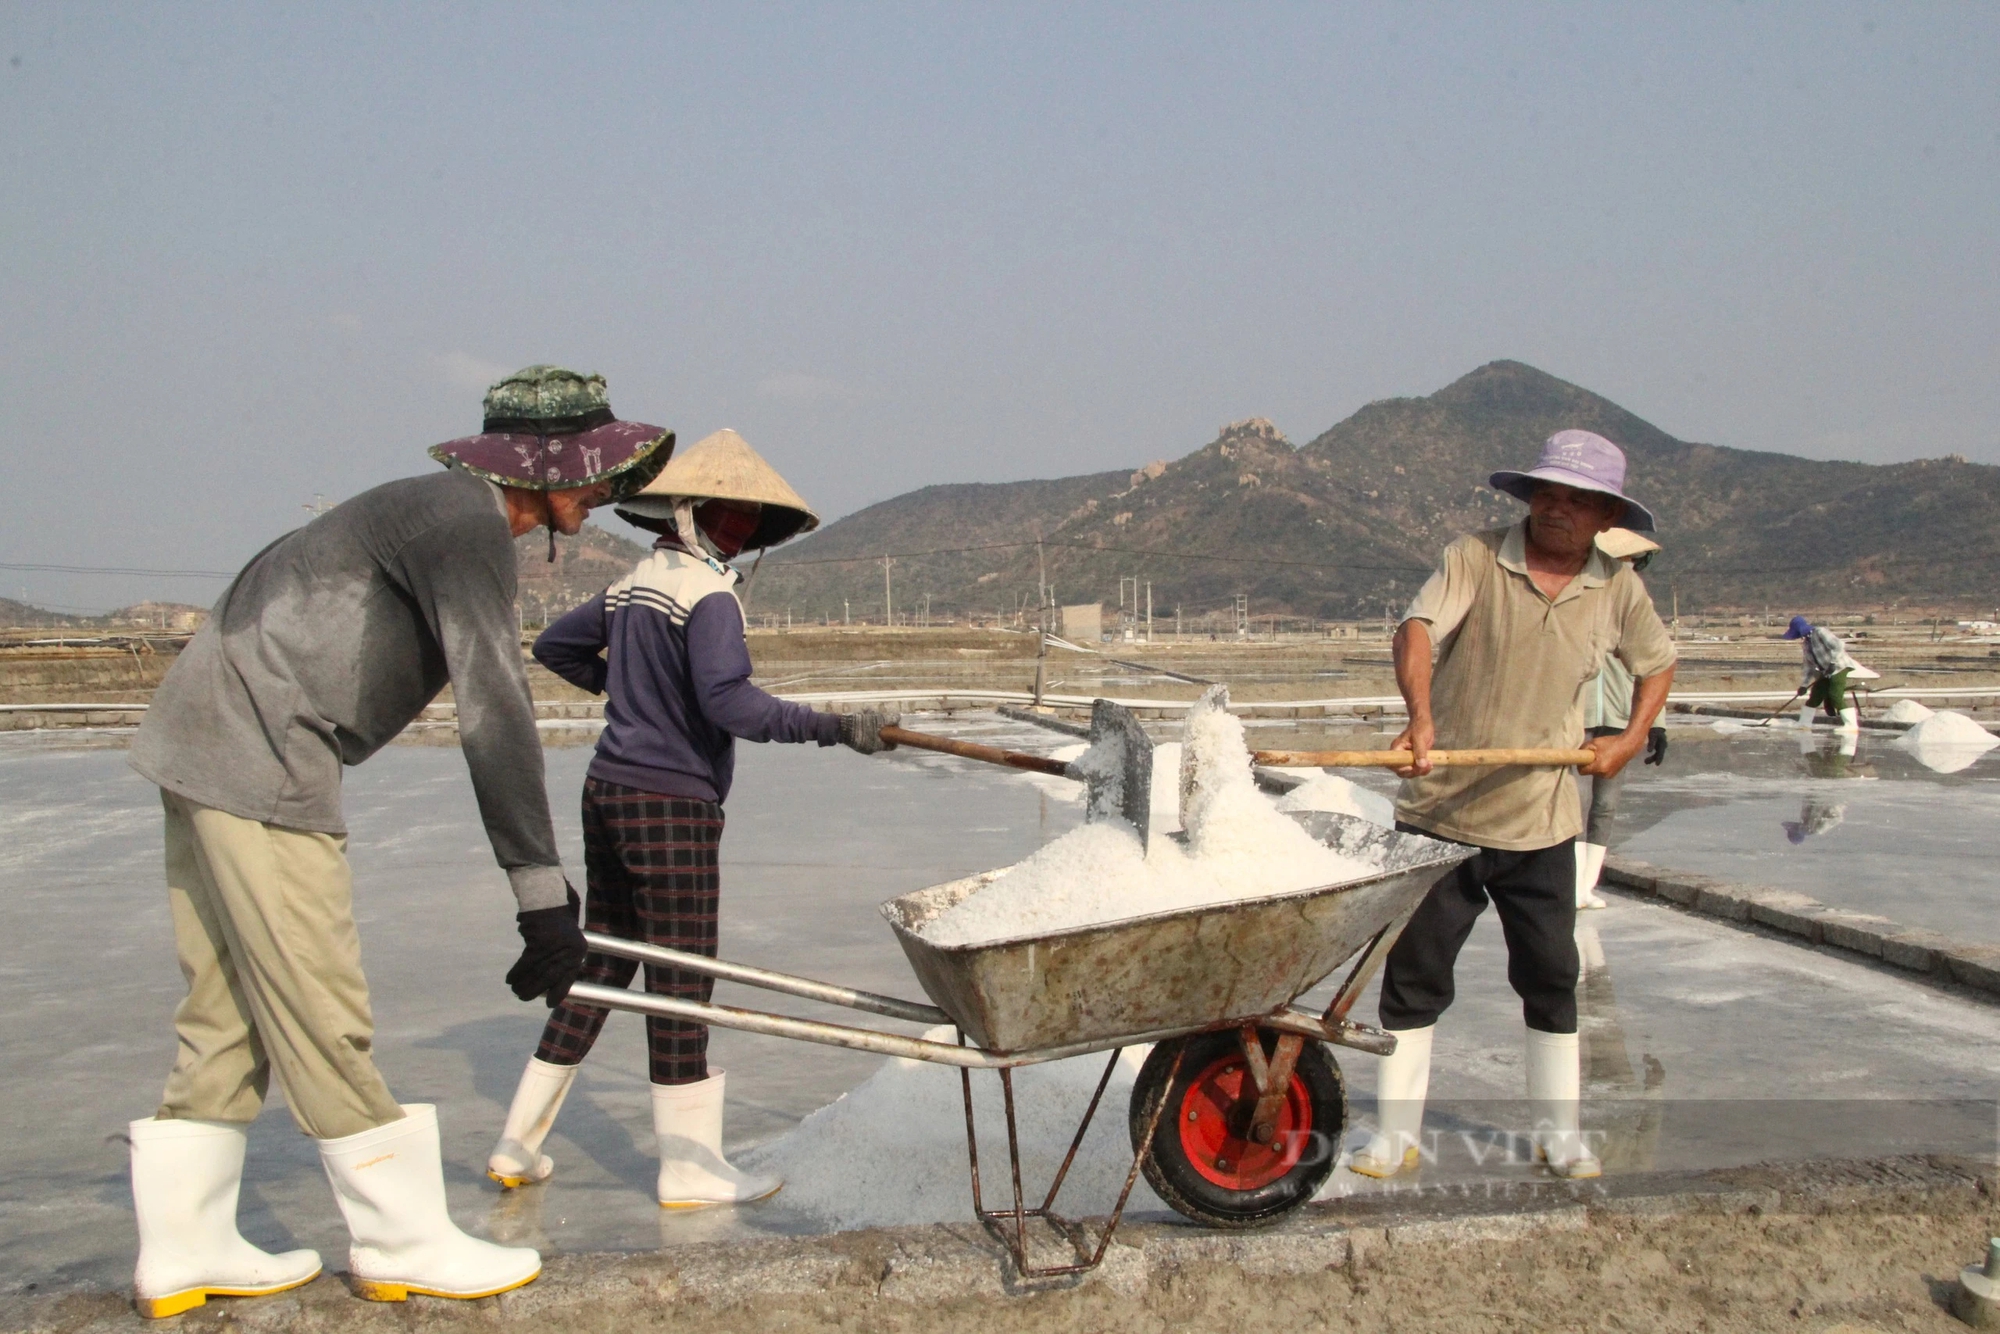 Diêm dân Ninh Thuận đầu năm ra đồng thu hoạch muối, ai cũng vui vì sản lượng tăng - Ảnh 5.